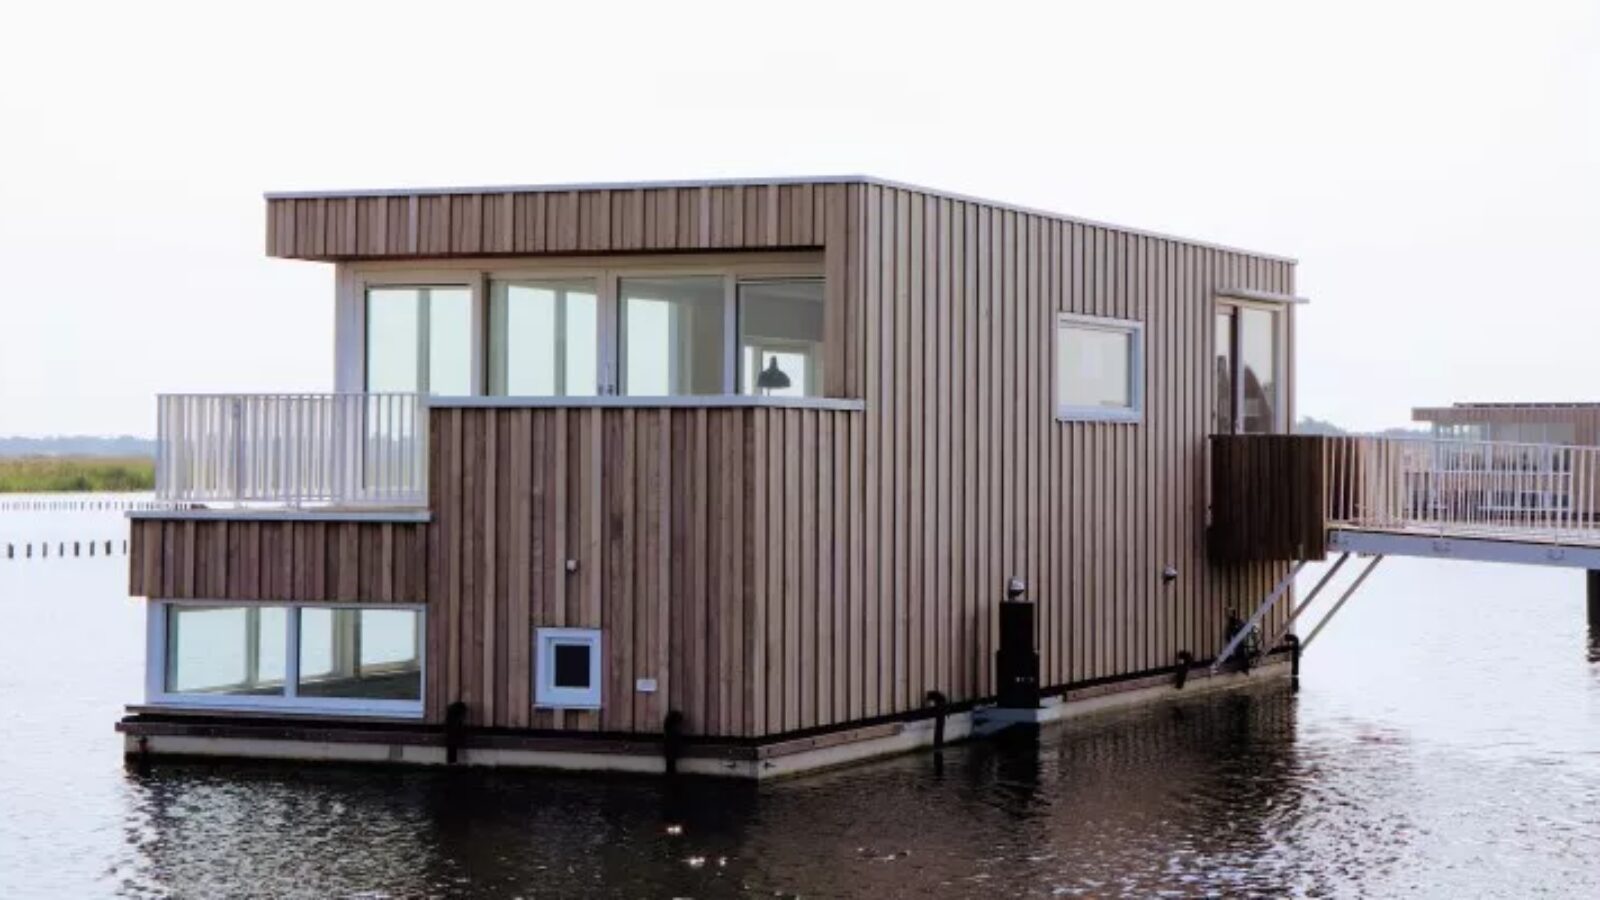 Model waterwoning in Tersluis vanaf 5 september geopend voor bezichtigingen